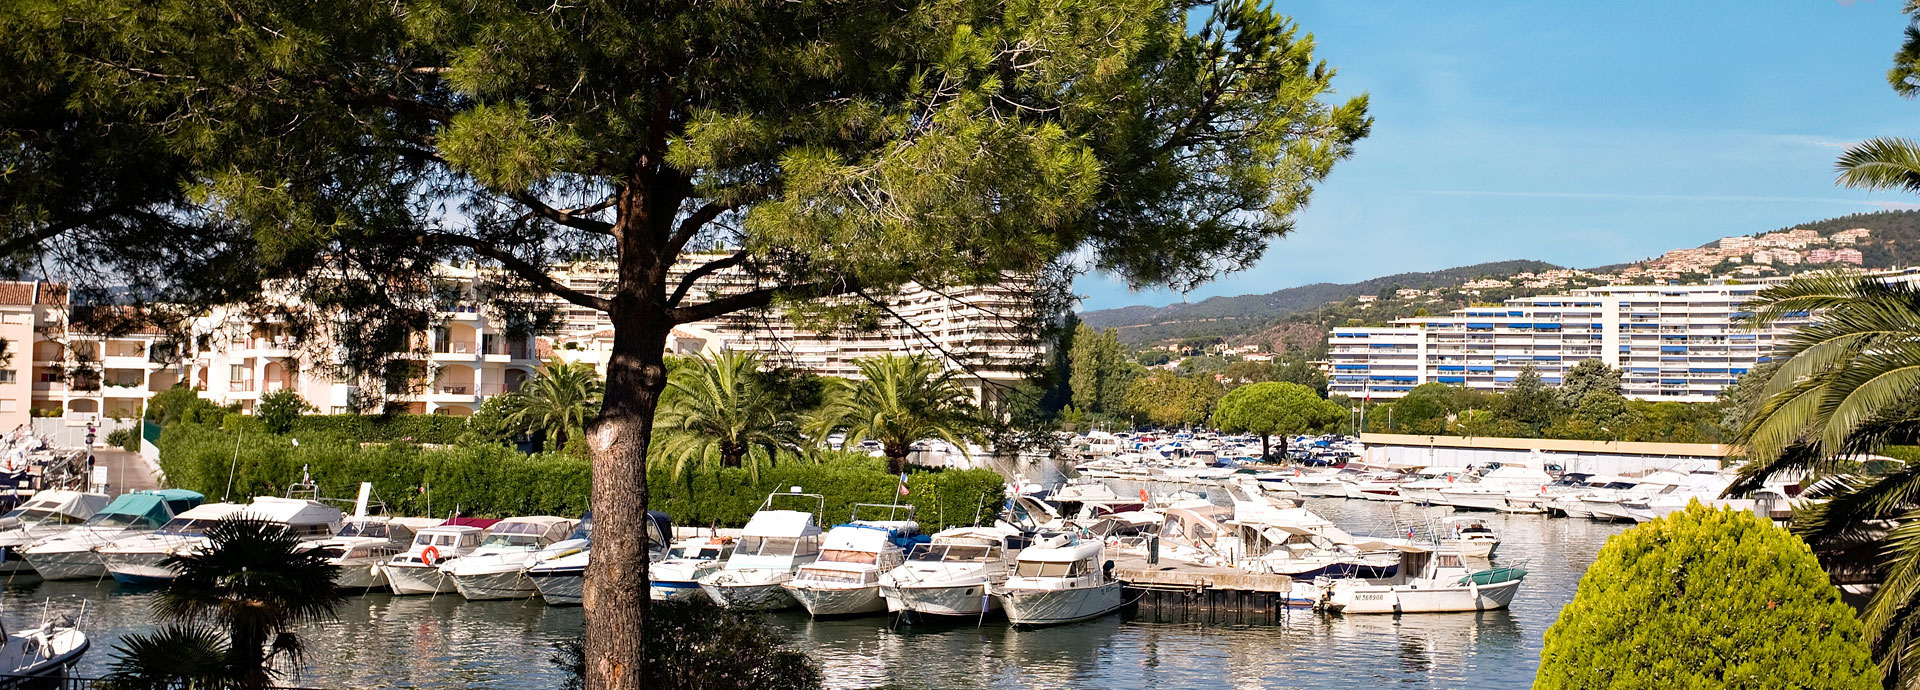 Cannes-Mandelieu la Napoule sur la Côte d'Azur : location vacances dans les Alpes-Maritimes